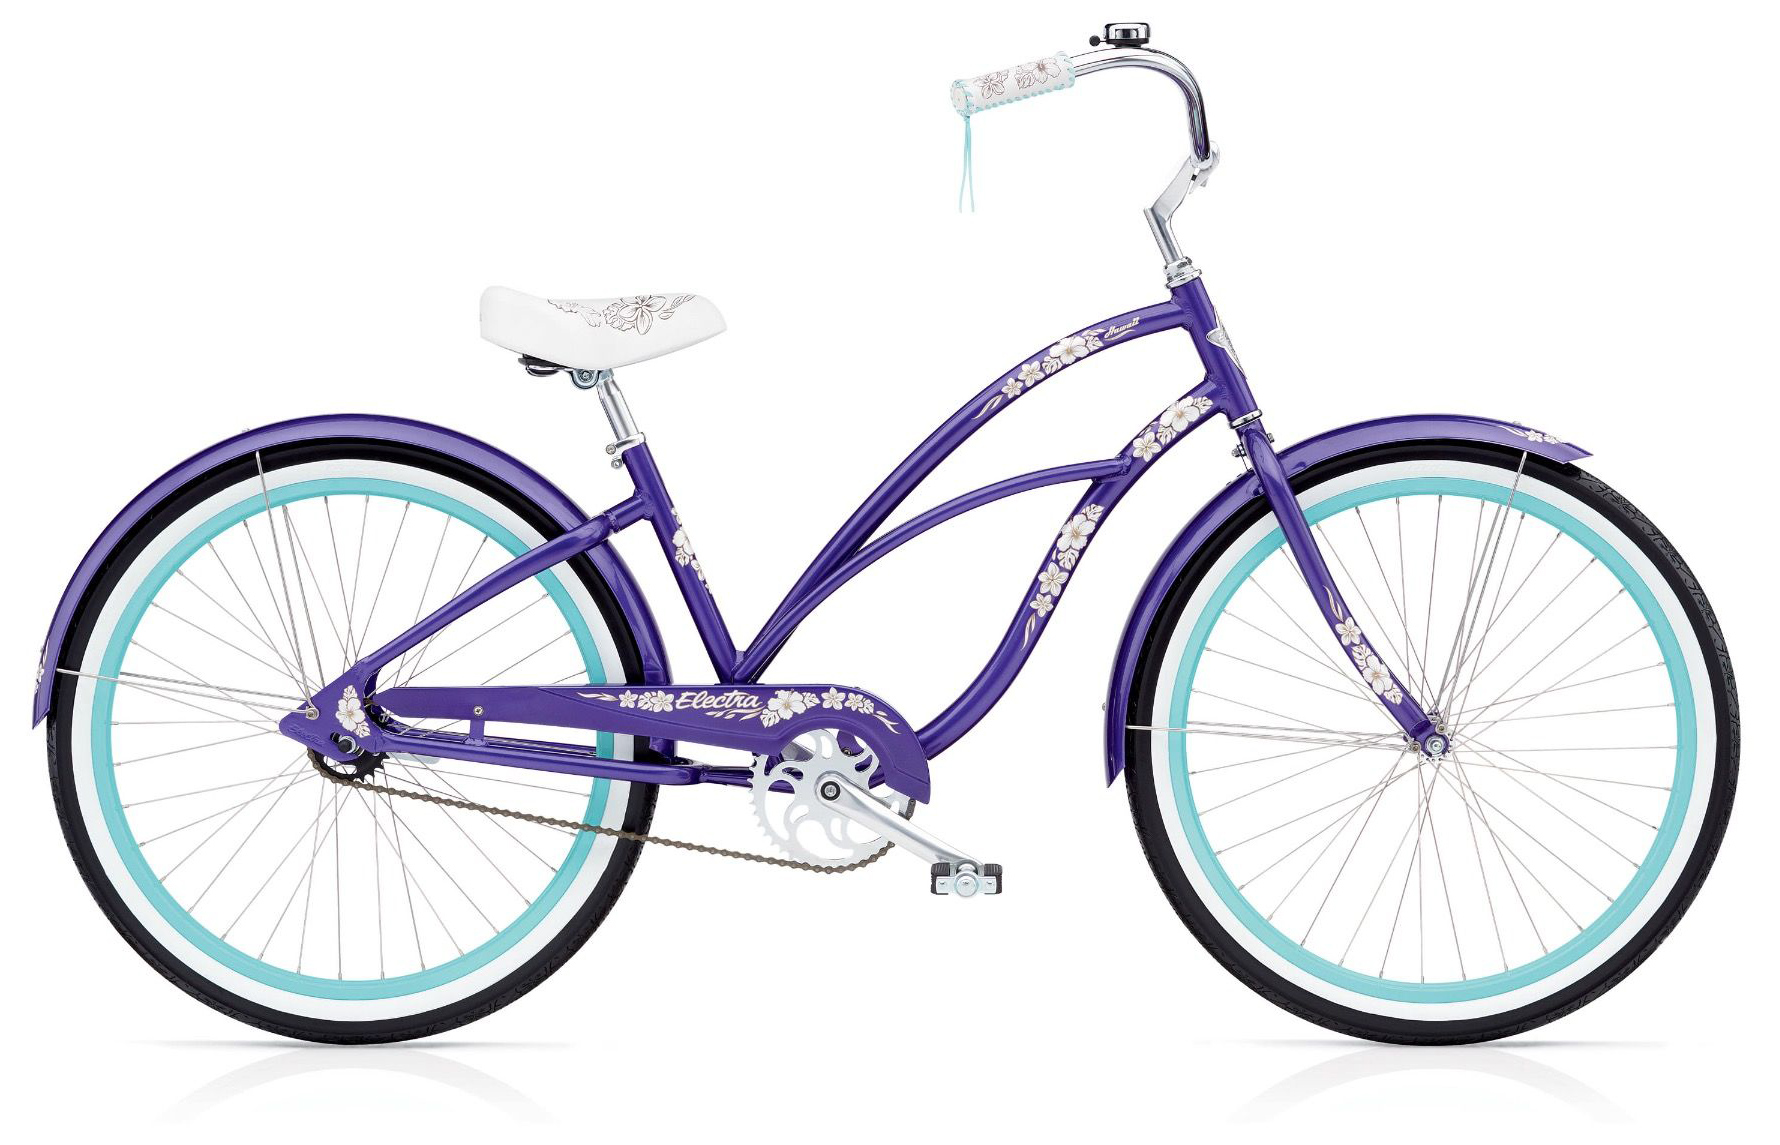  Велосипед Electra Cruiser Hawaii 3i 2019